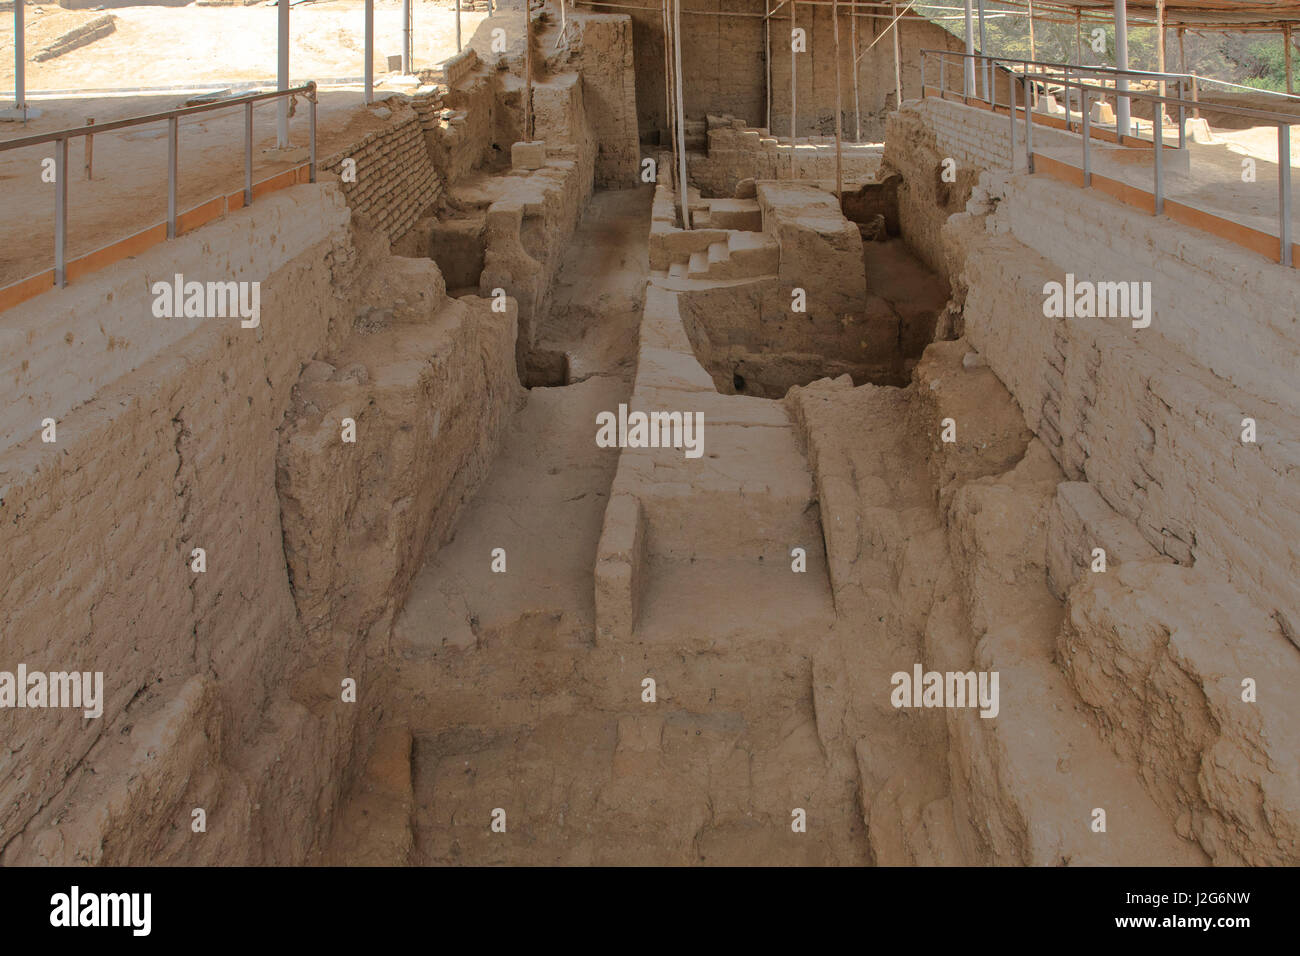 Esta es una de las Tumbas Moche recintos excavados en 1987, es el denominado Huaca Rajada y la primera las tumbas fueron construidas en 300 D.C. y es considerado uno de los más importantes descubrimientos arqueológicos en América del Sur en los últimos treinta años. Foto de stock